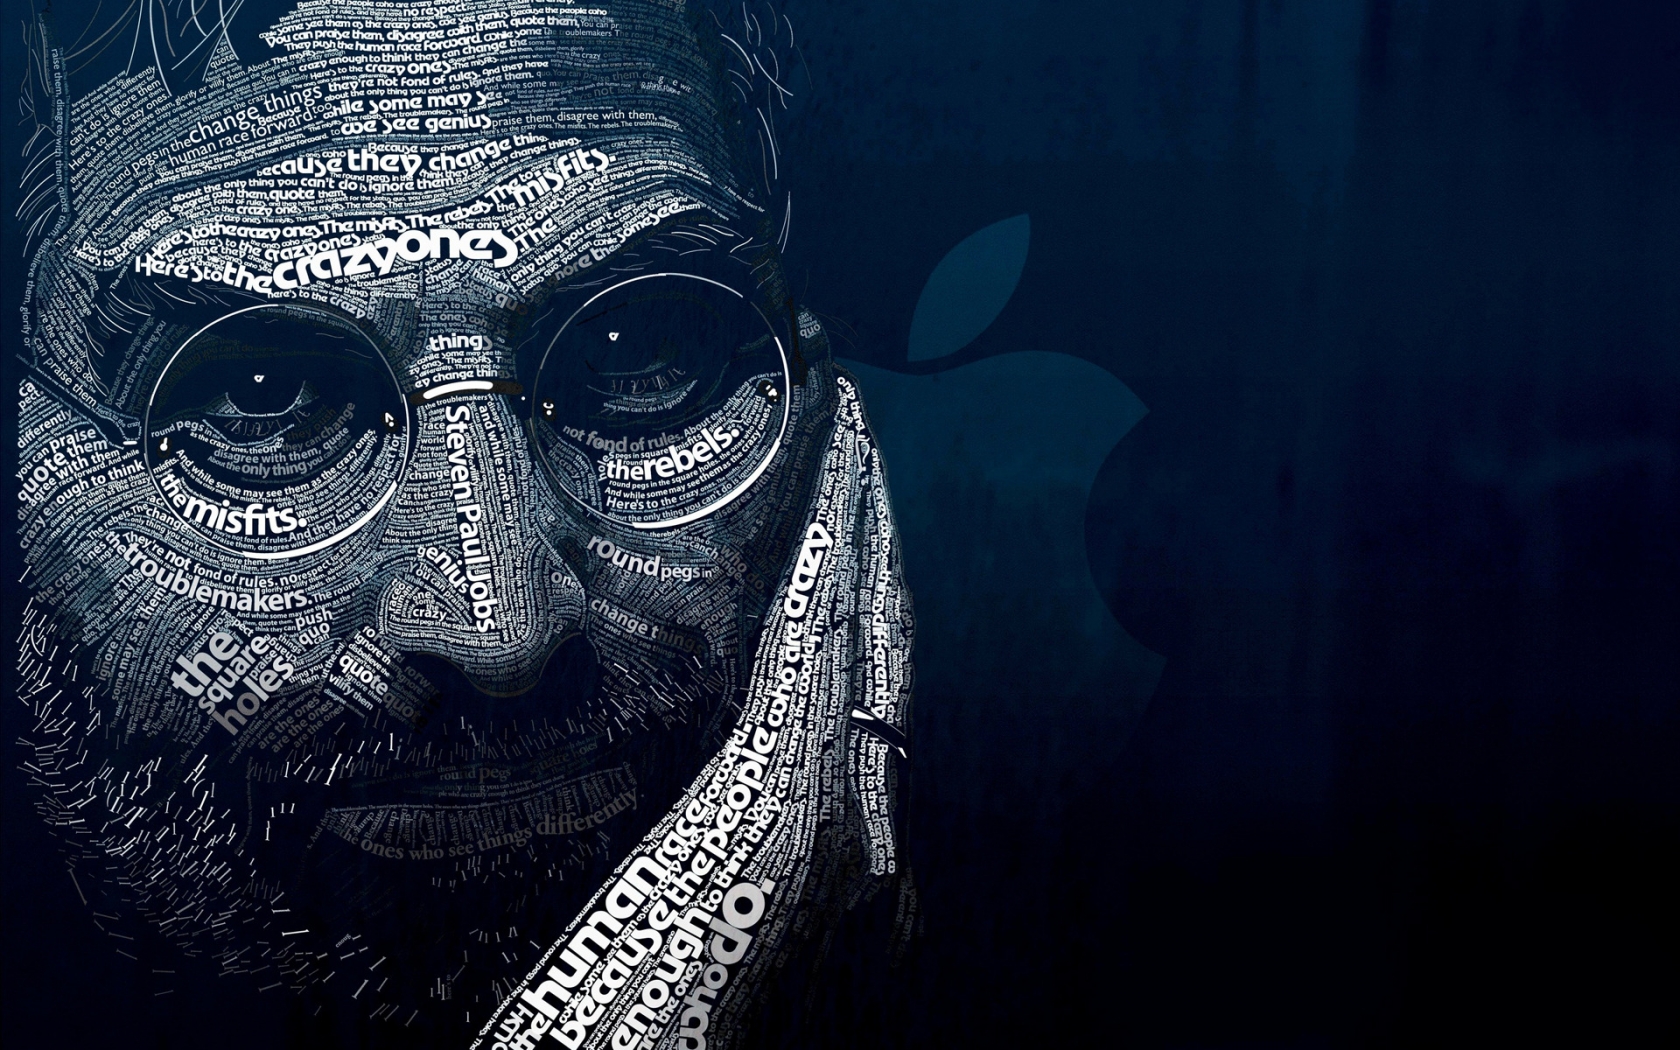 Steve Jobs Word Art for 1680 x 1050 widescreen resolution